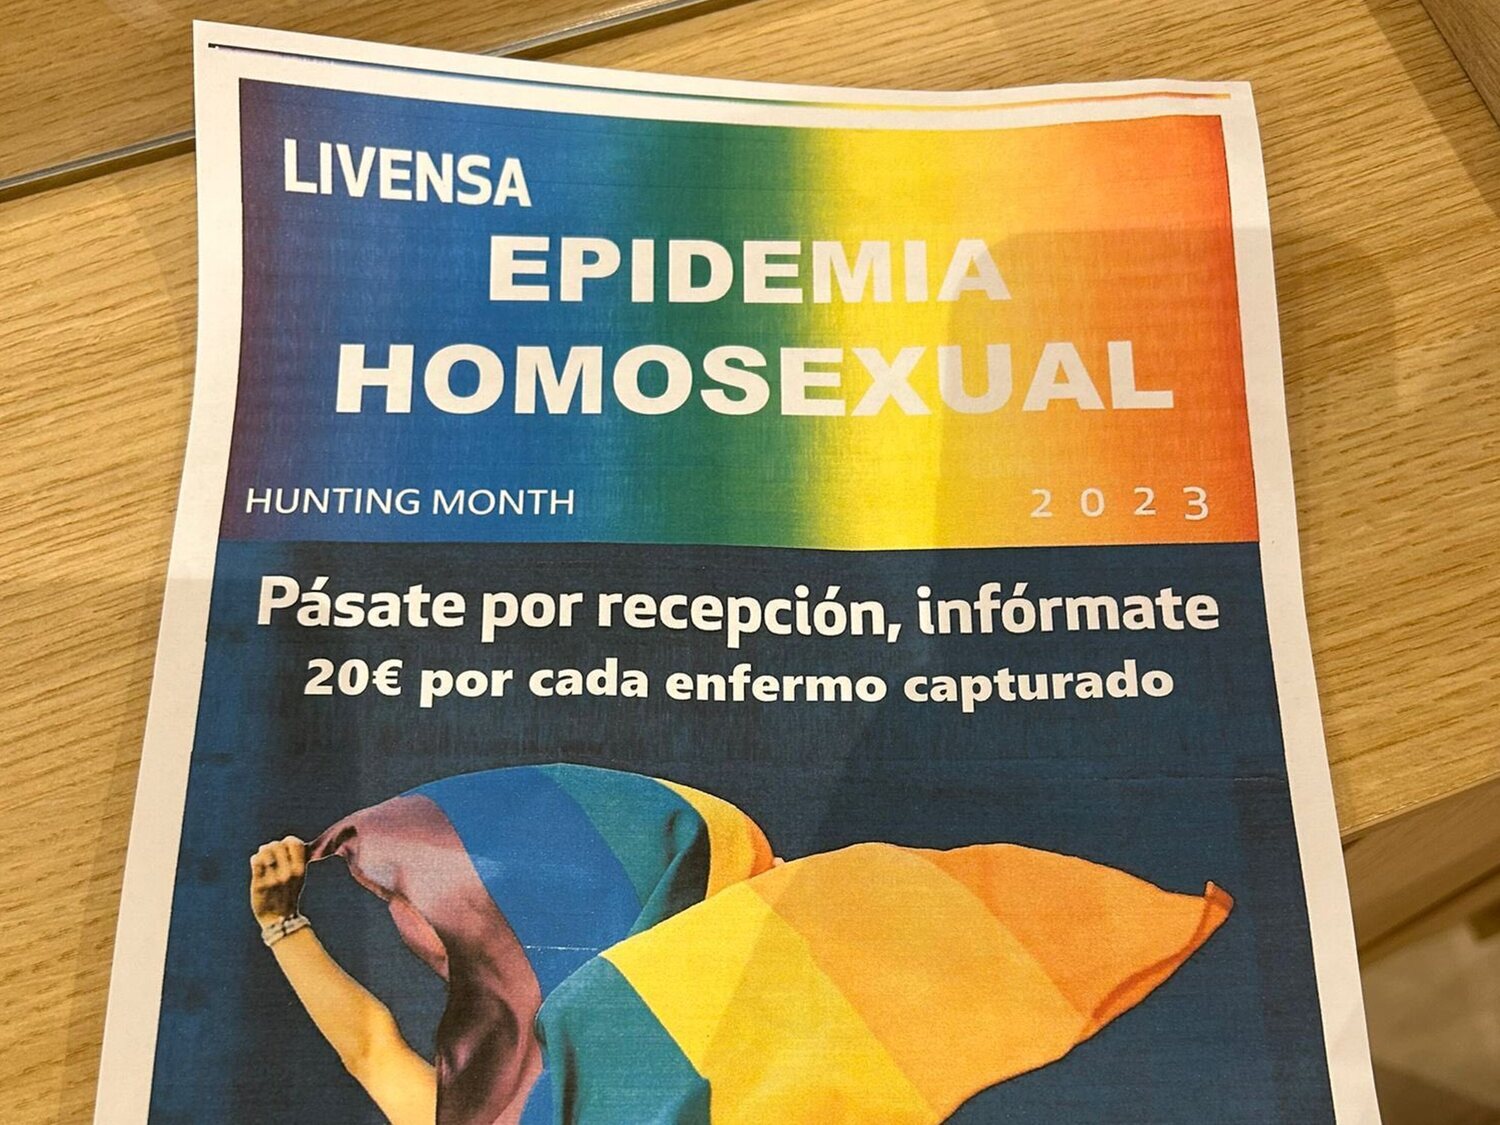 Homofobia en Málaga: 20 euros en una residencia universitaria por "enfermo capturado" en la "epidemia homosexual"